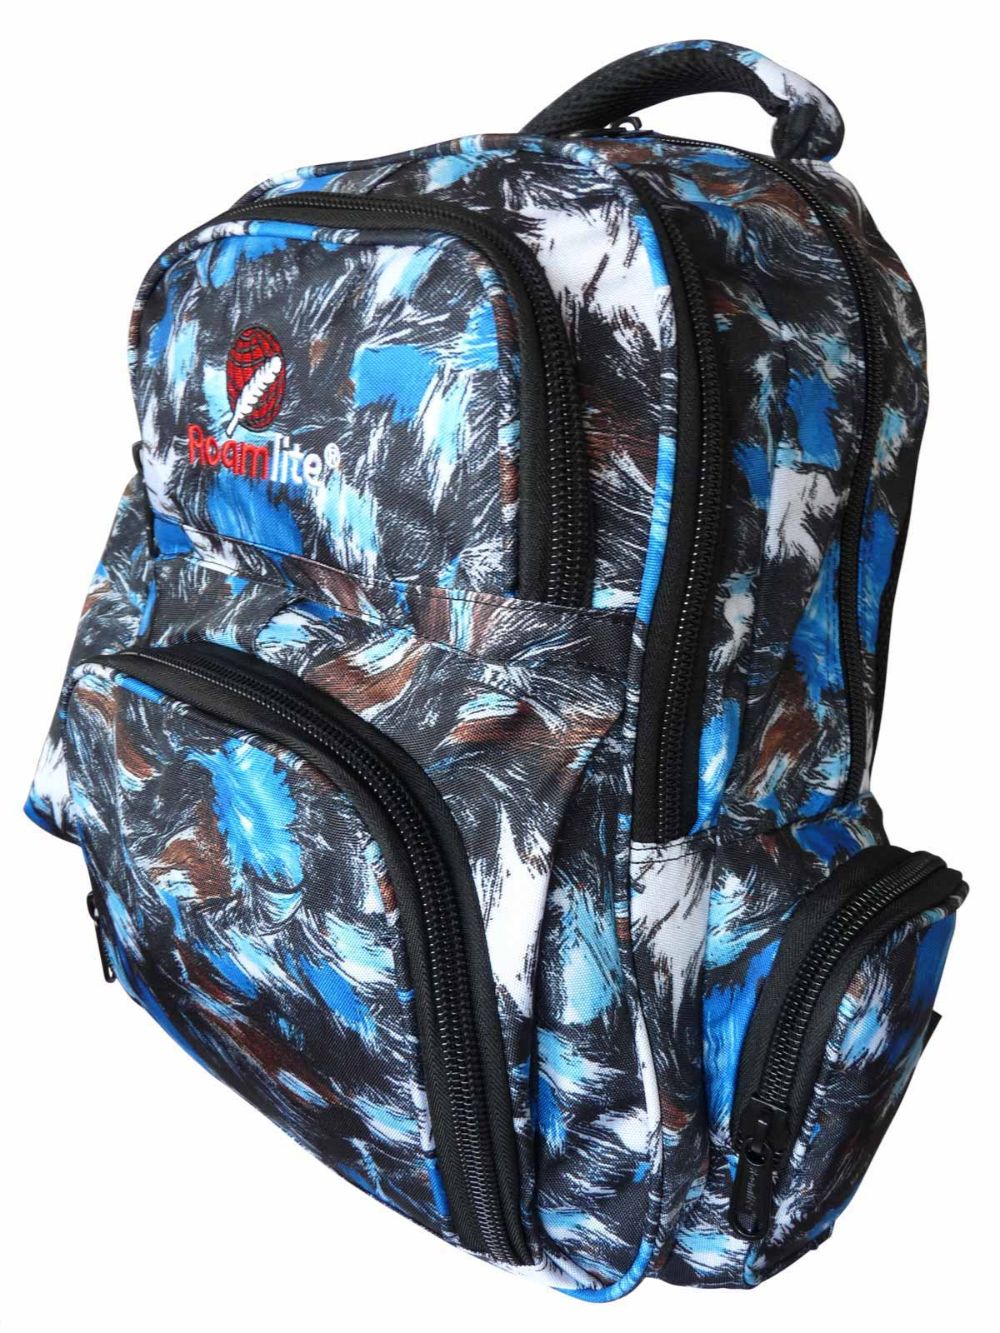 Roamlite Childrens Backpack Blue Paint pattern RL839 